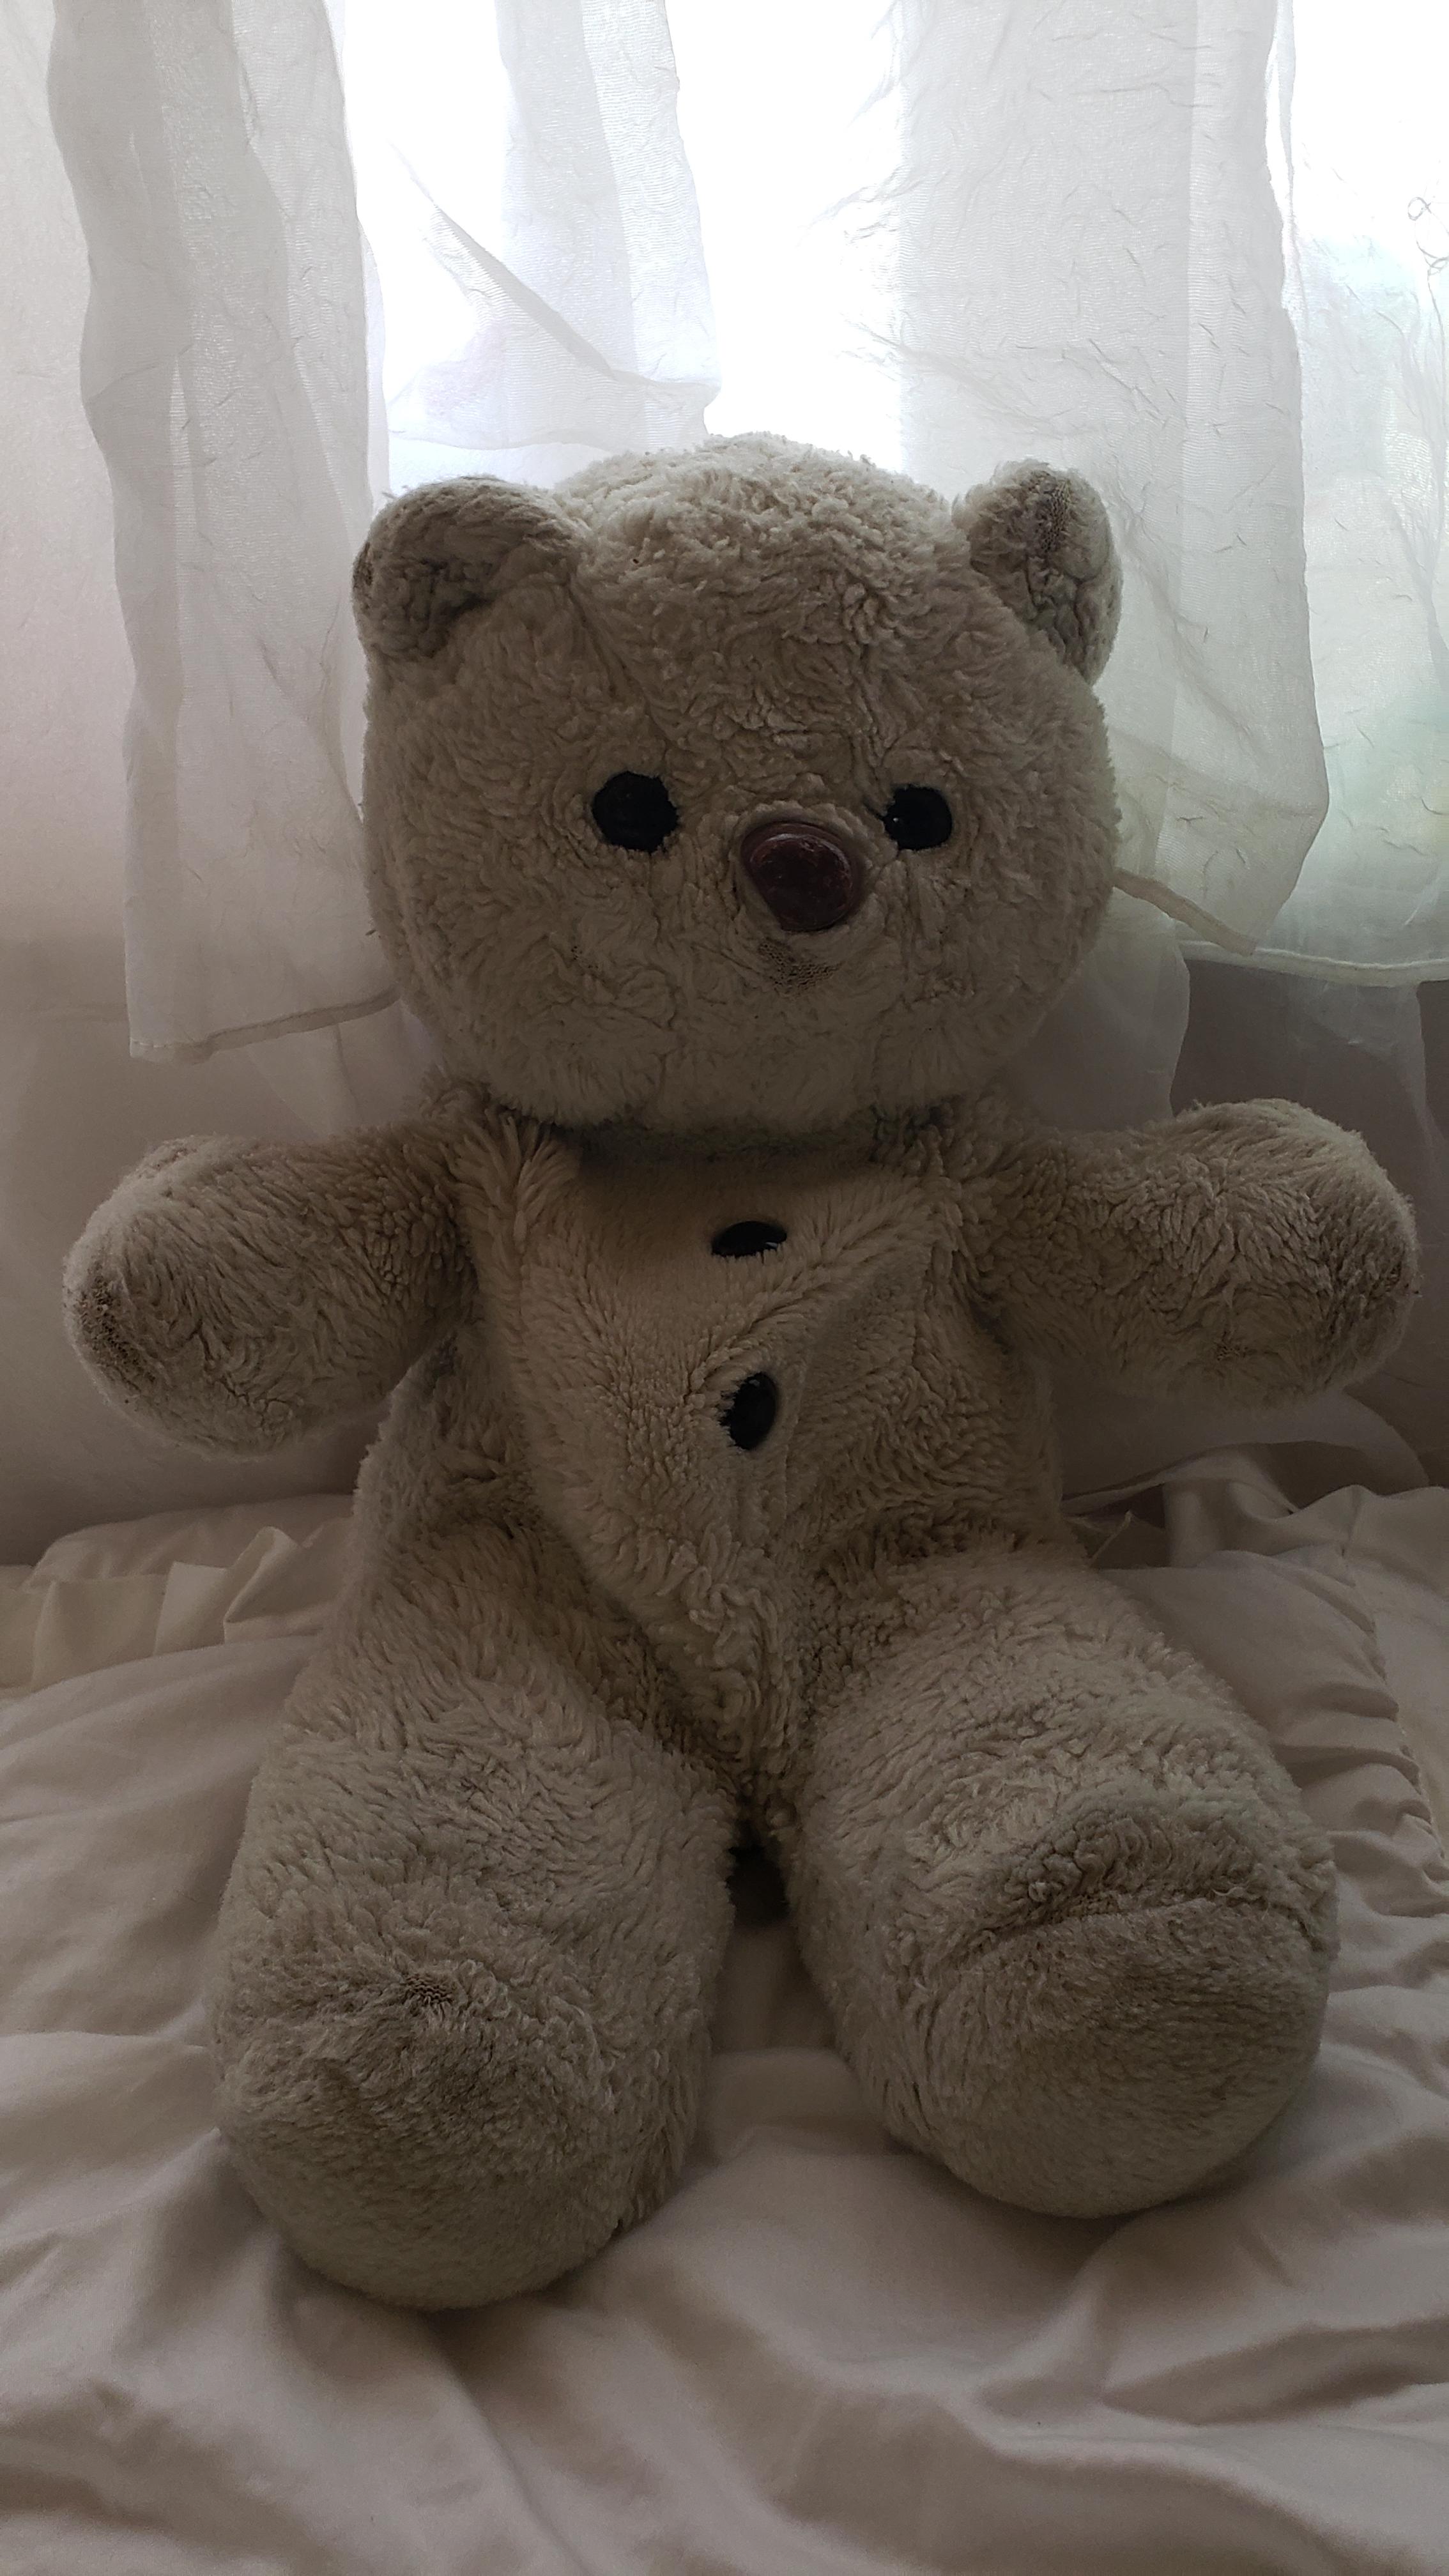 Teddy Bear Brand, Name? | Scrolller